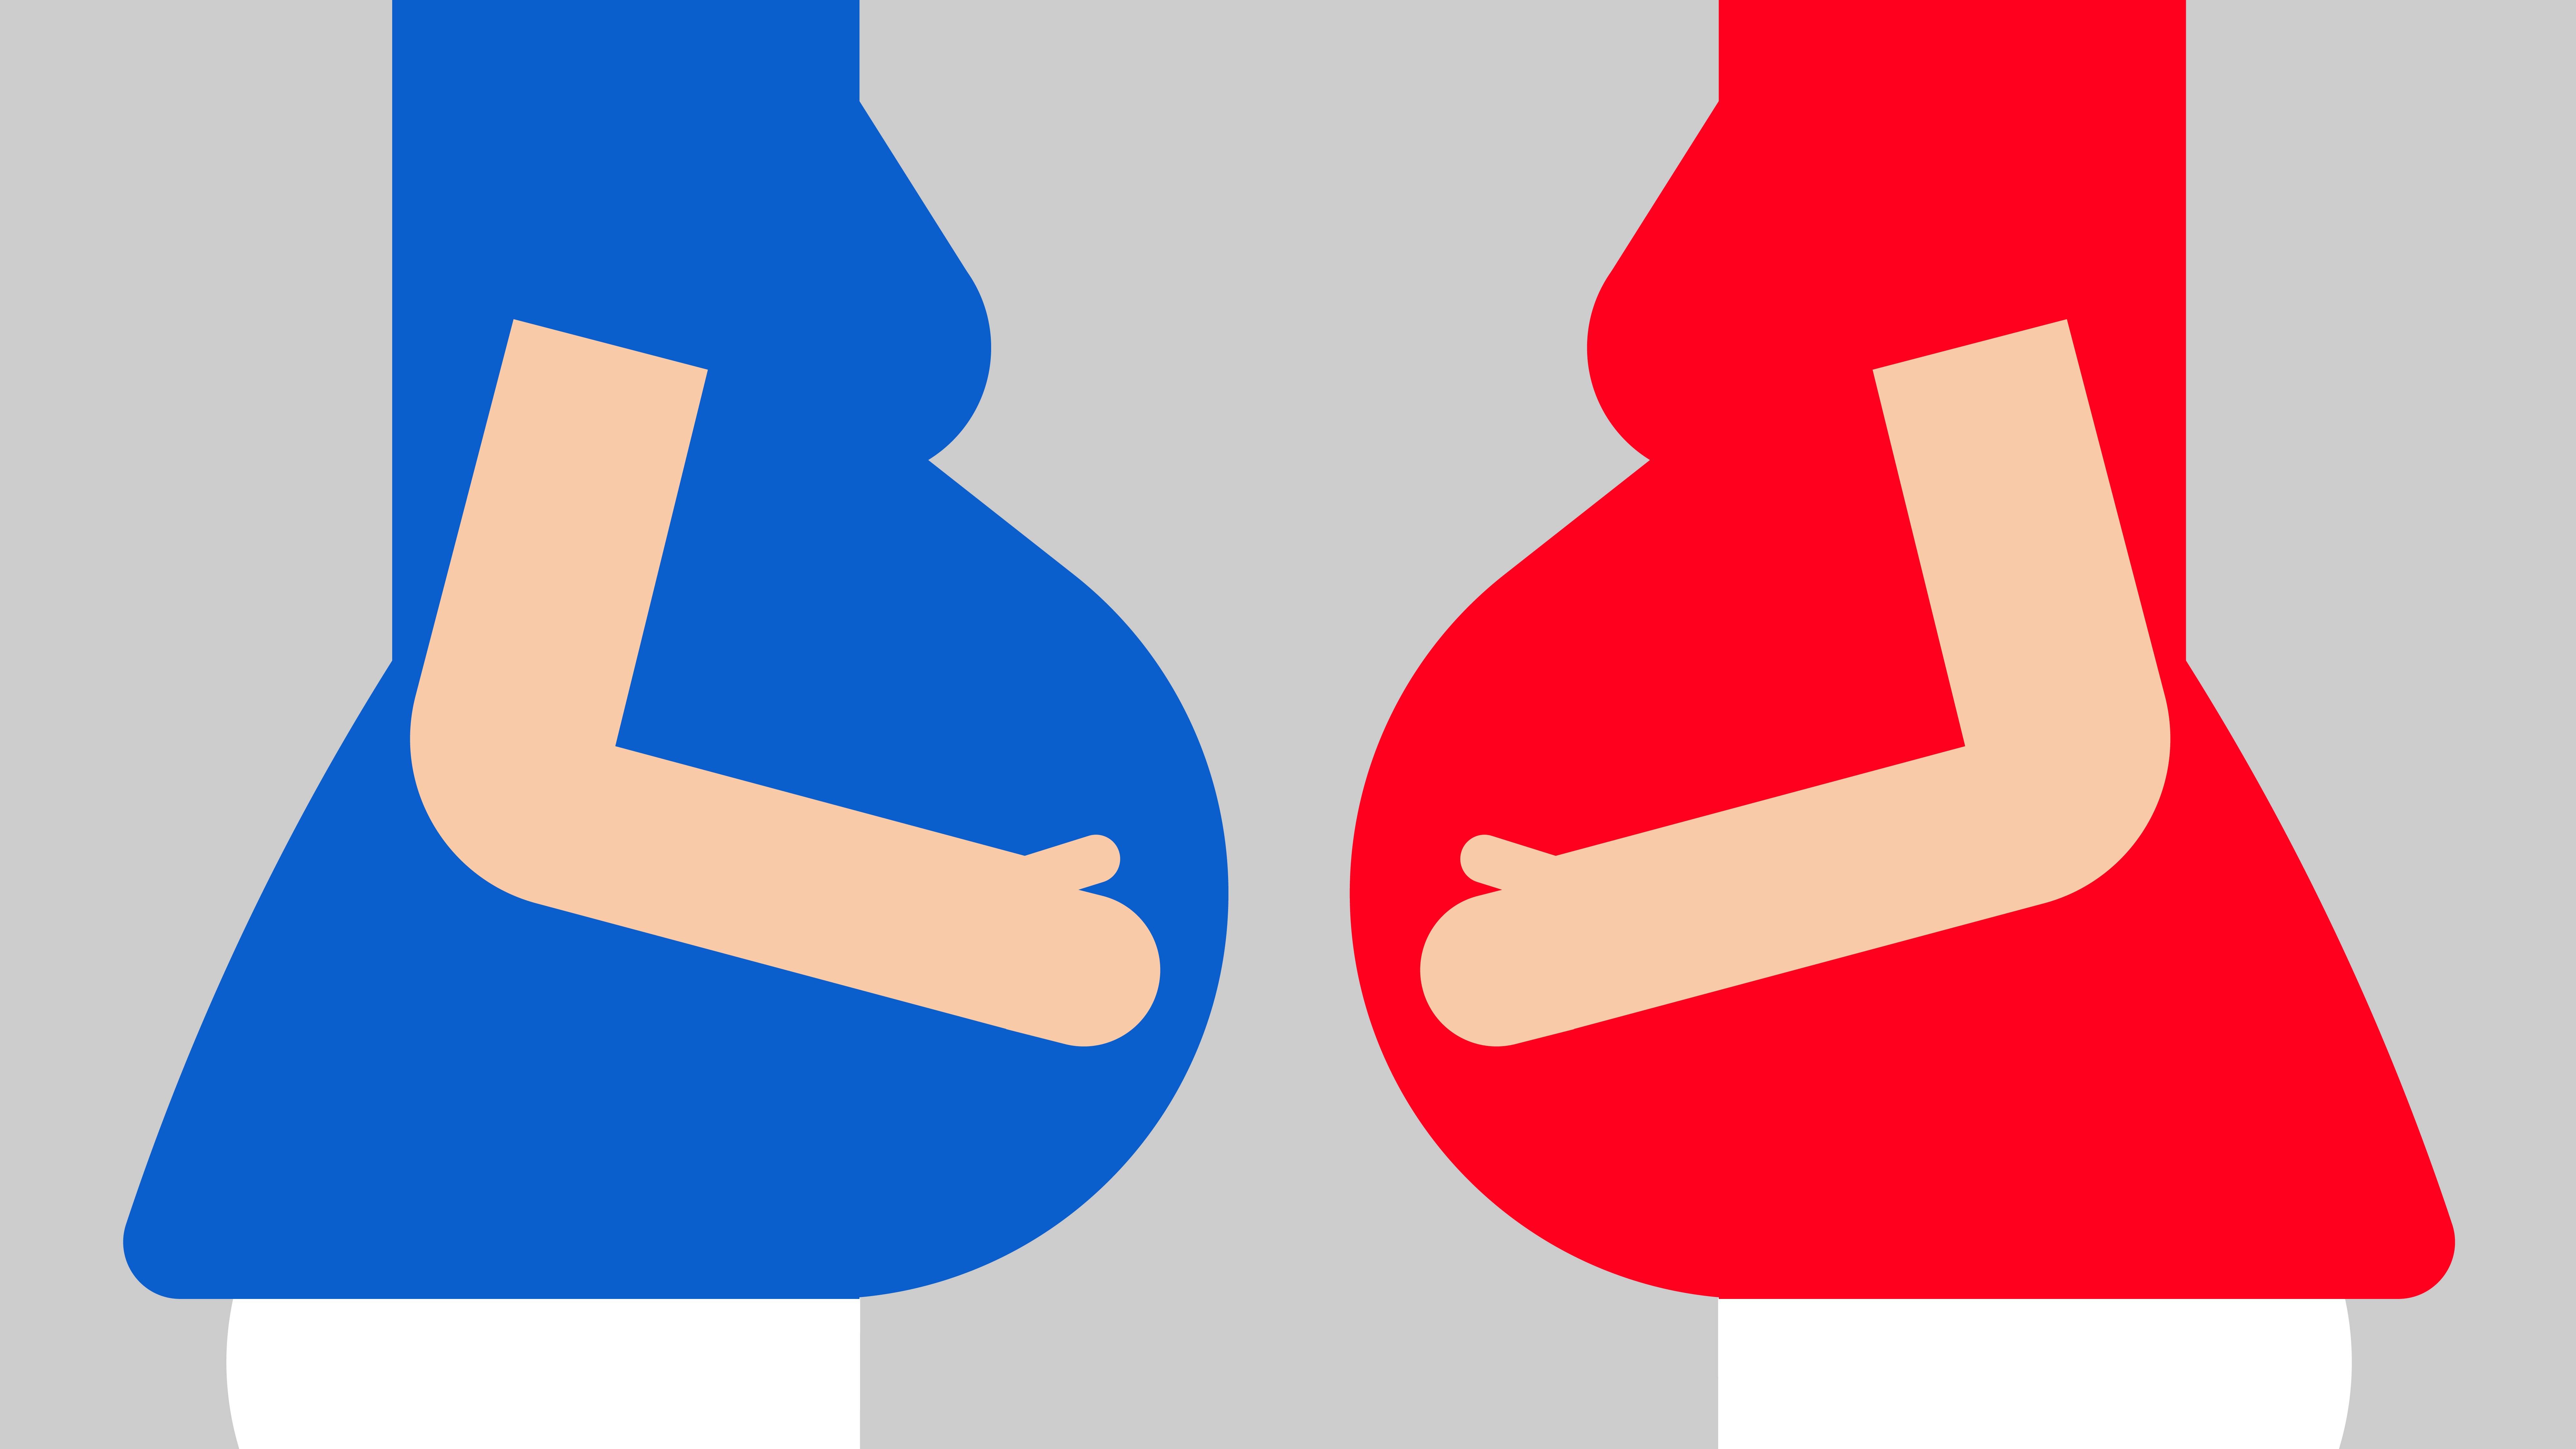 Fødselsskader bliver dækket vidt forskelligt af forsikringsbranchen – se hvordan du er stillet